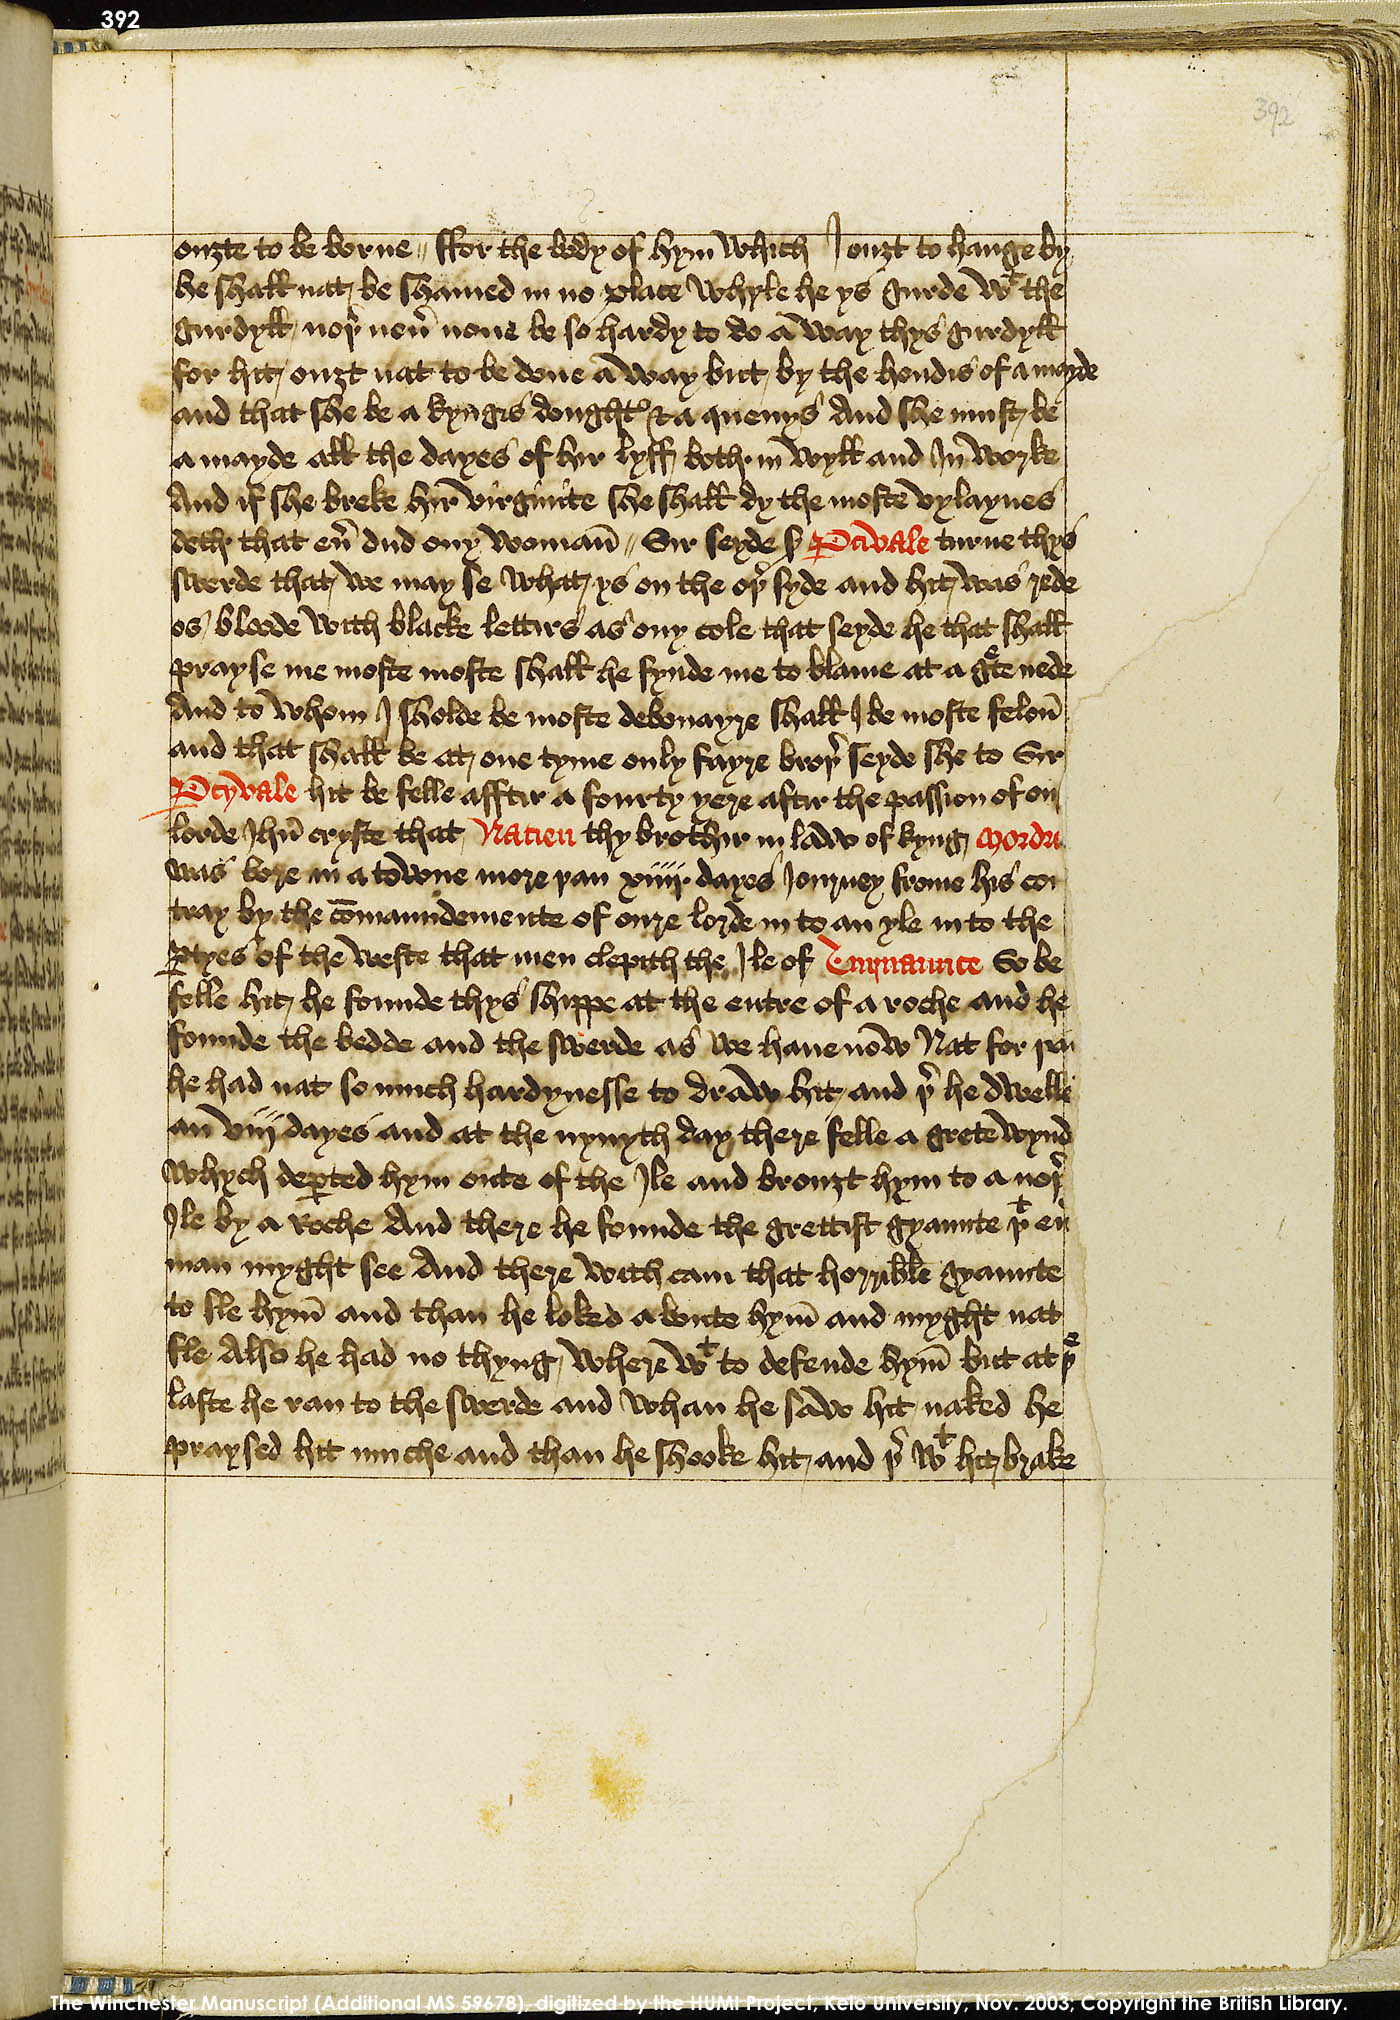 Folio 392r